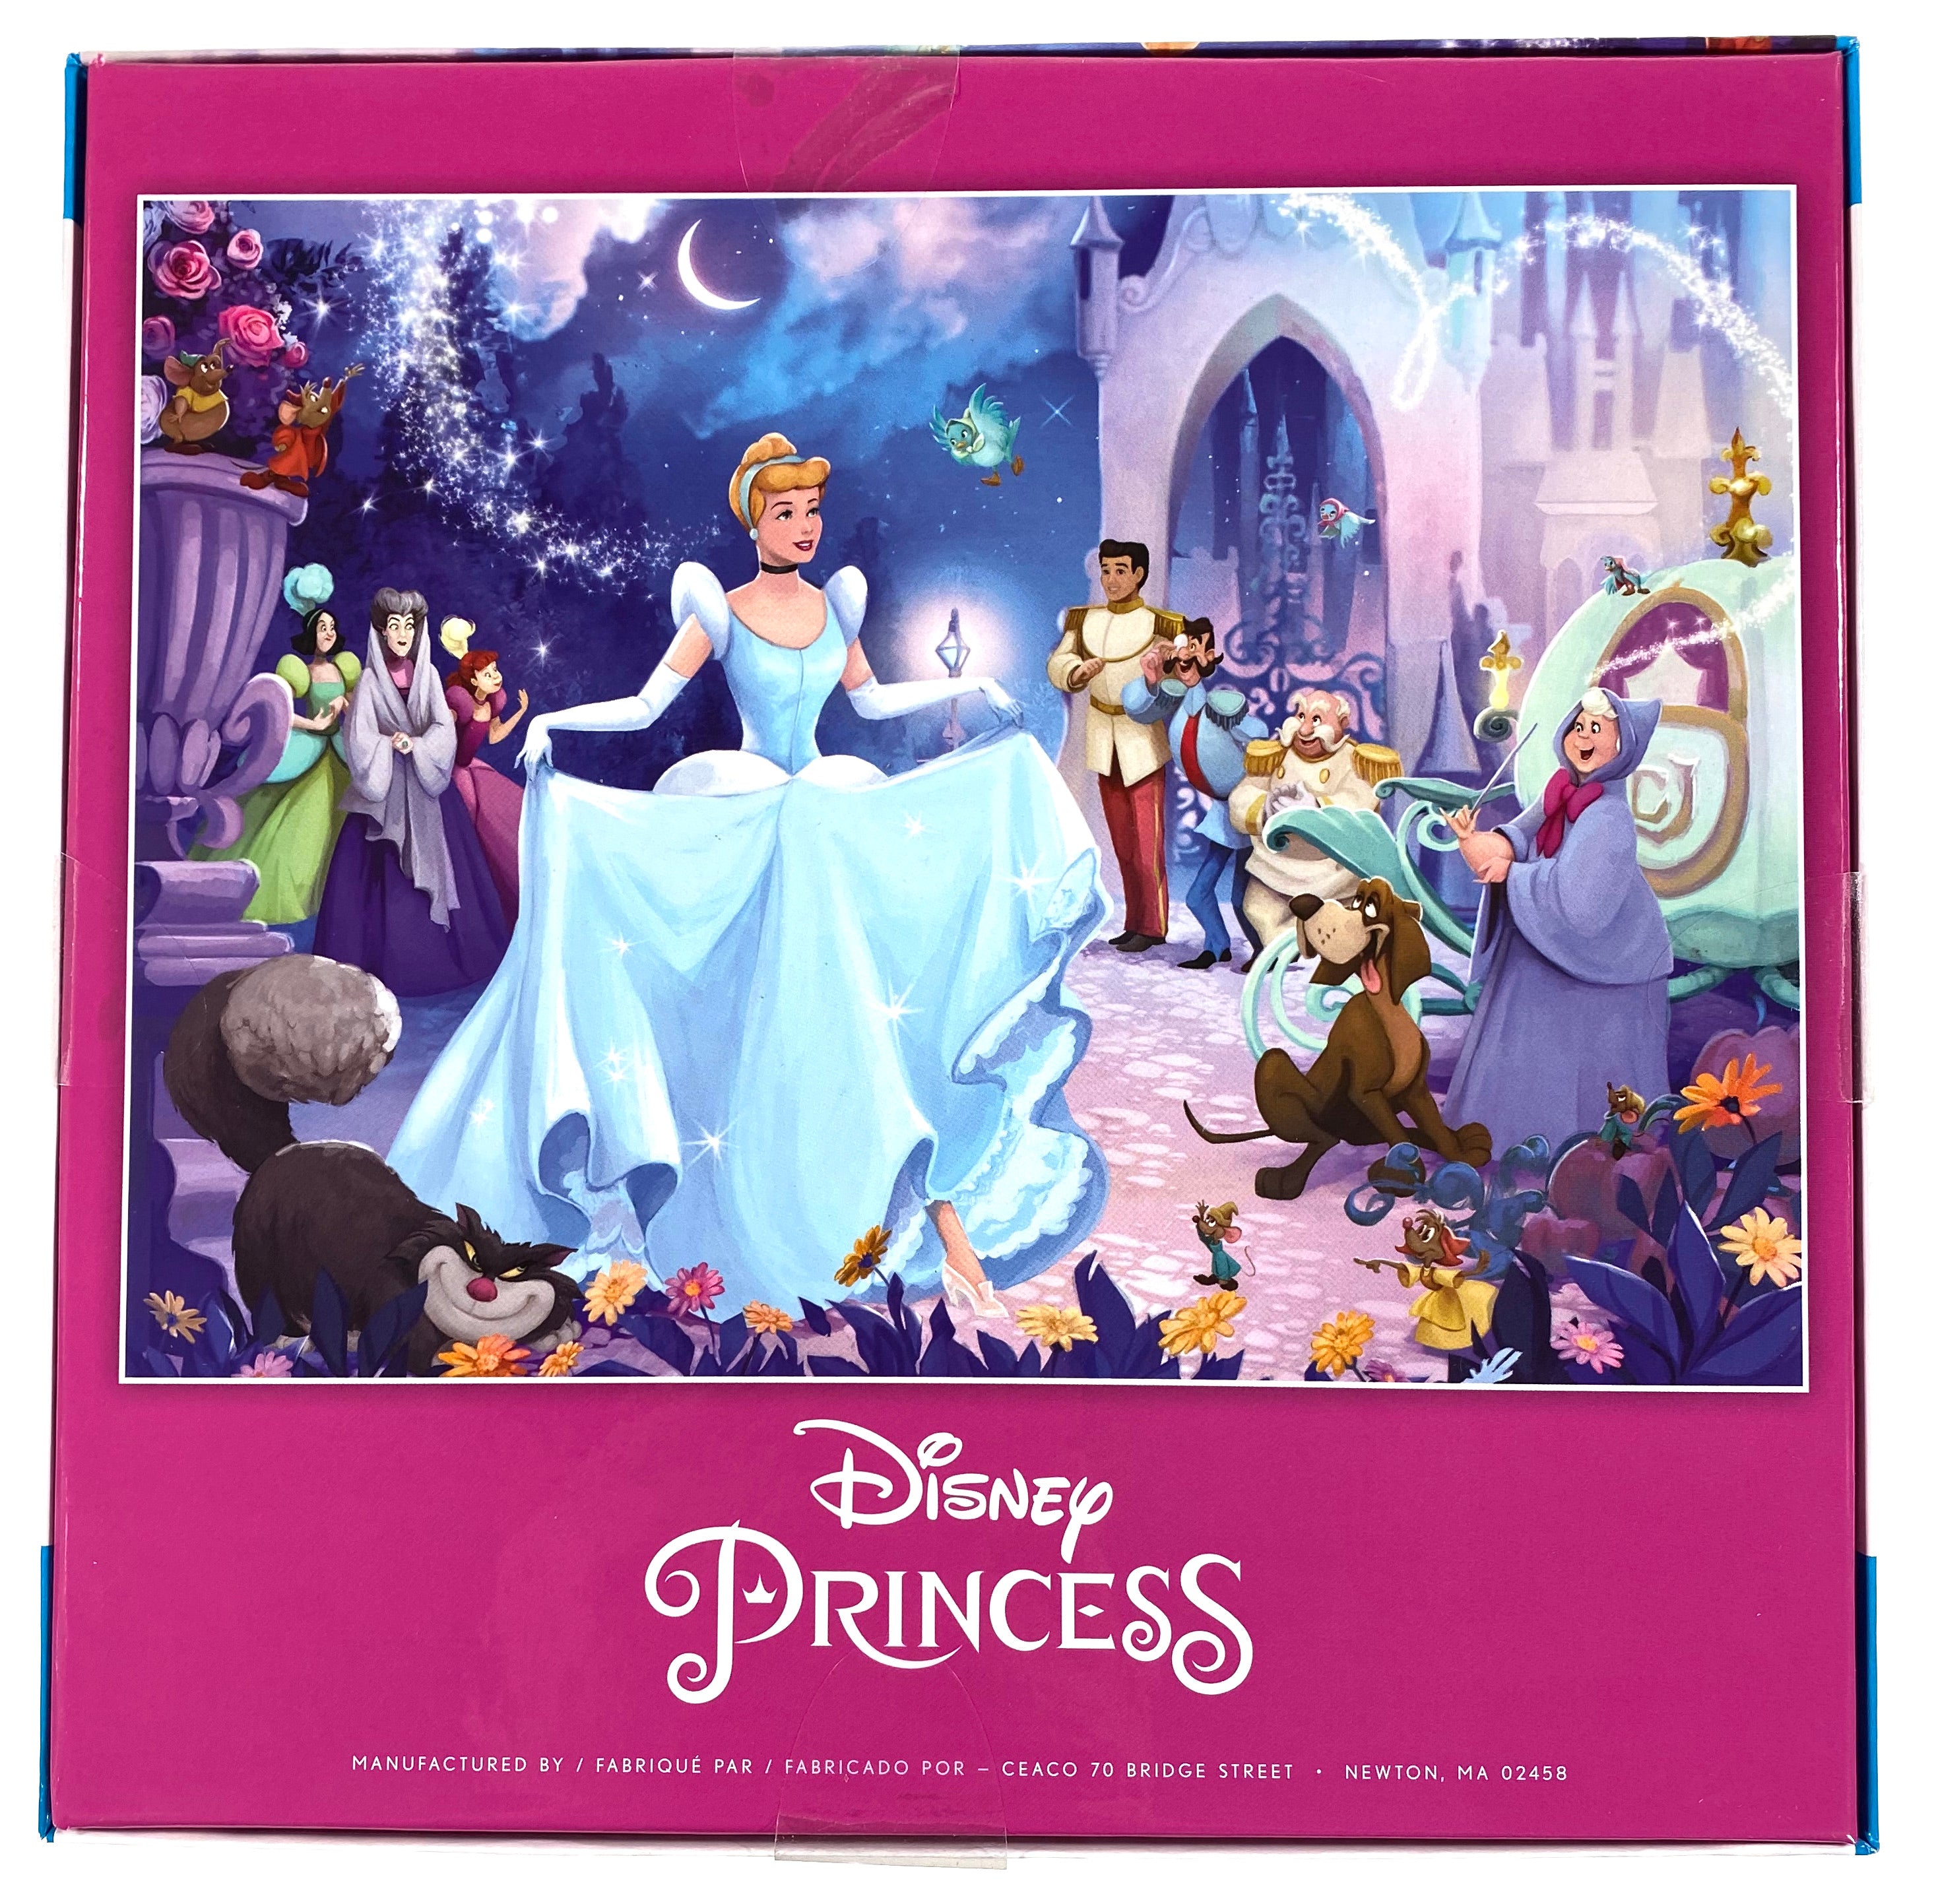 Disney Princess Cinderella 1000 Piece Puzzle    